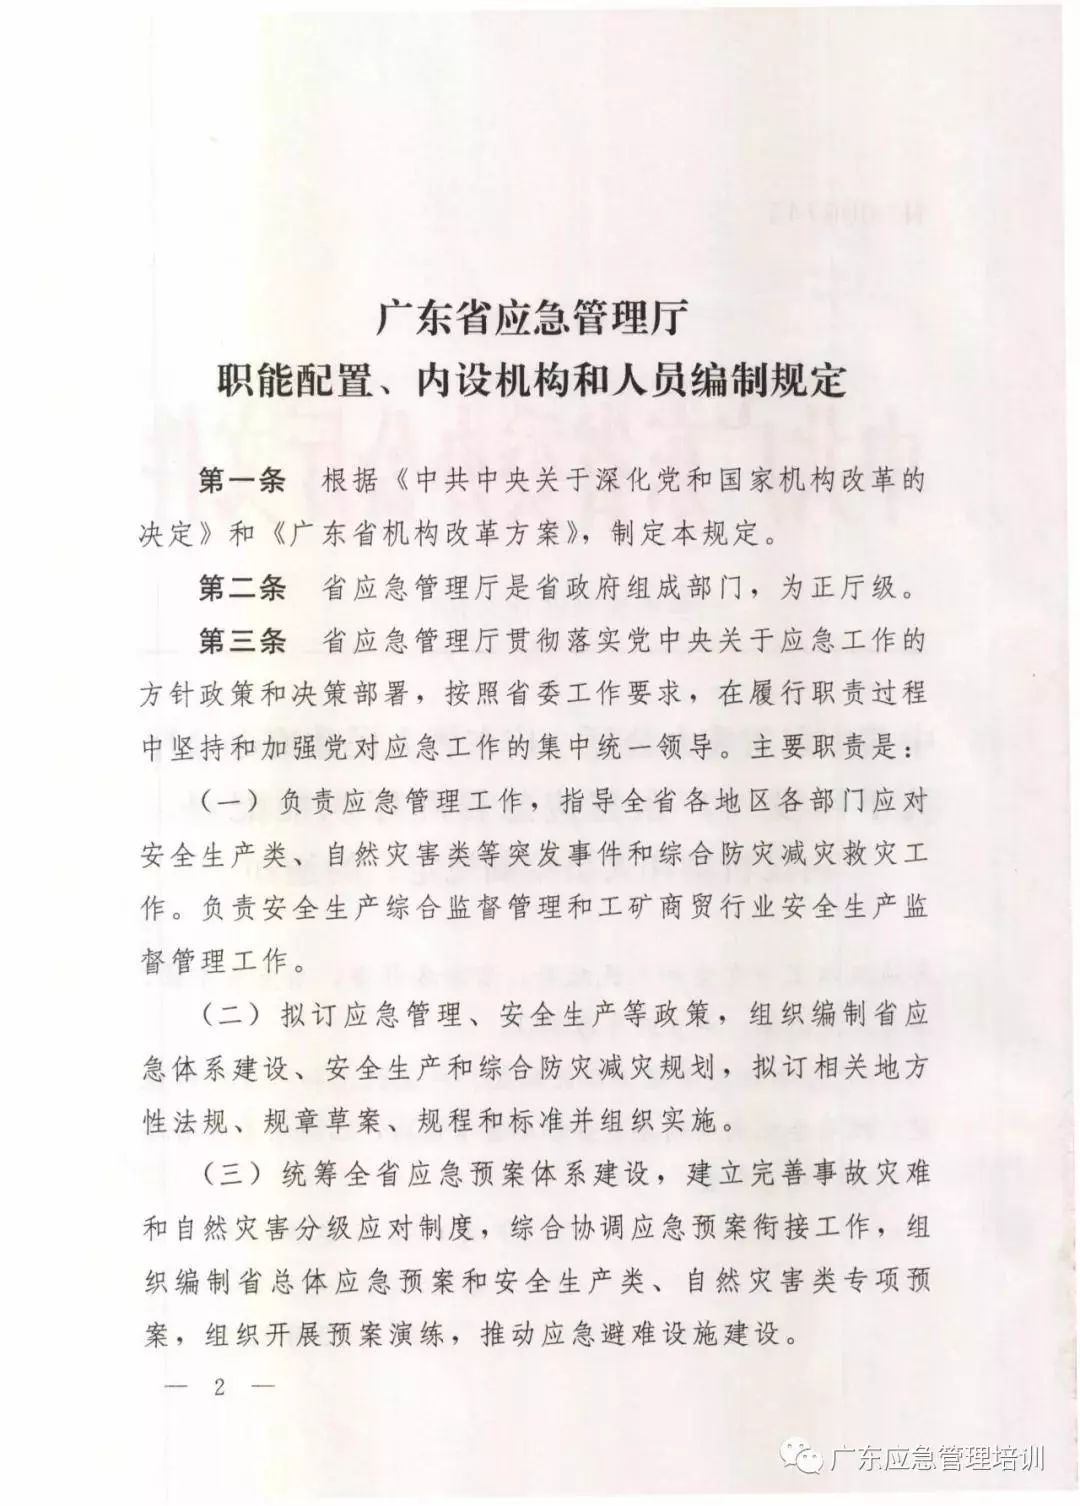 期盼已久的广东省应急管理厅三定方案现出炉